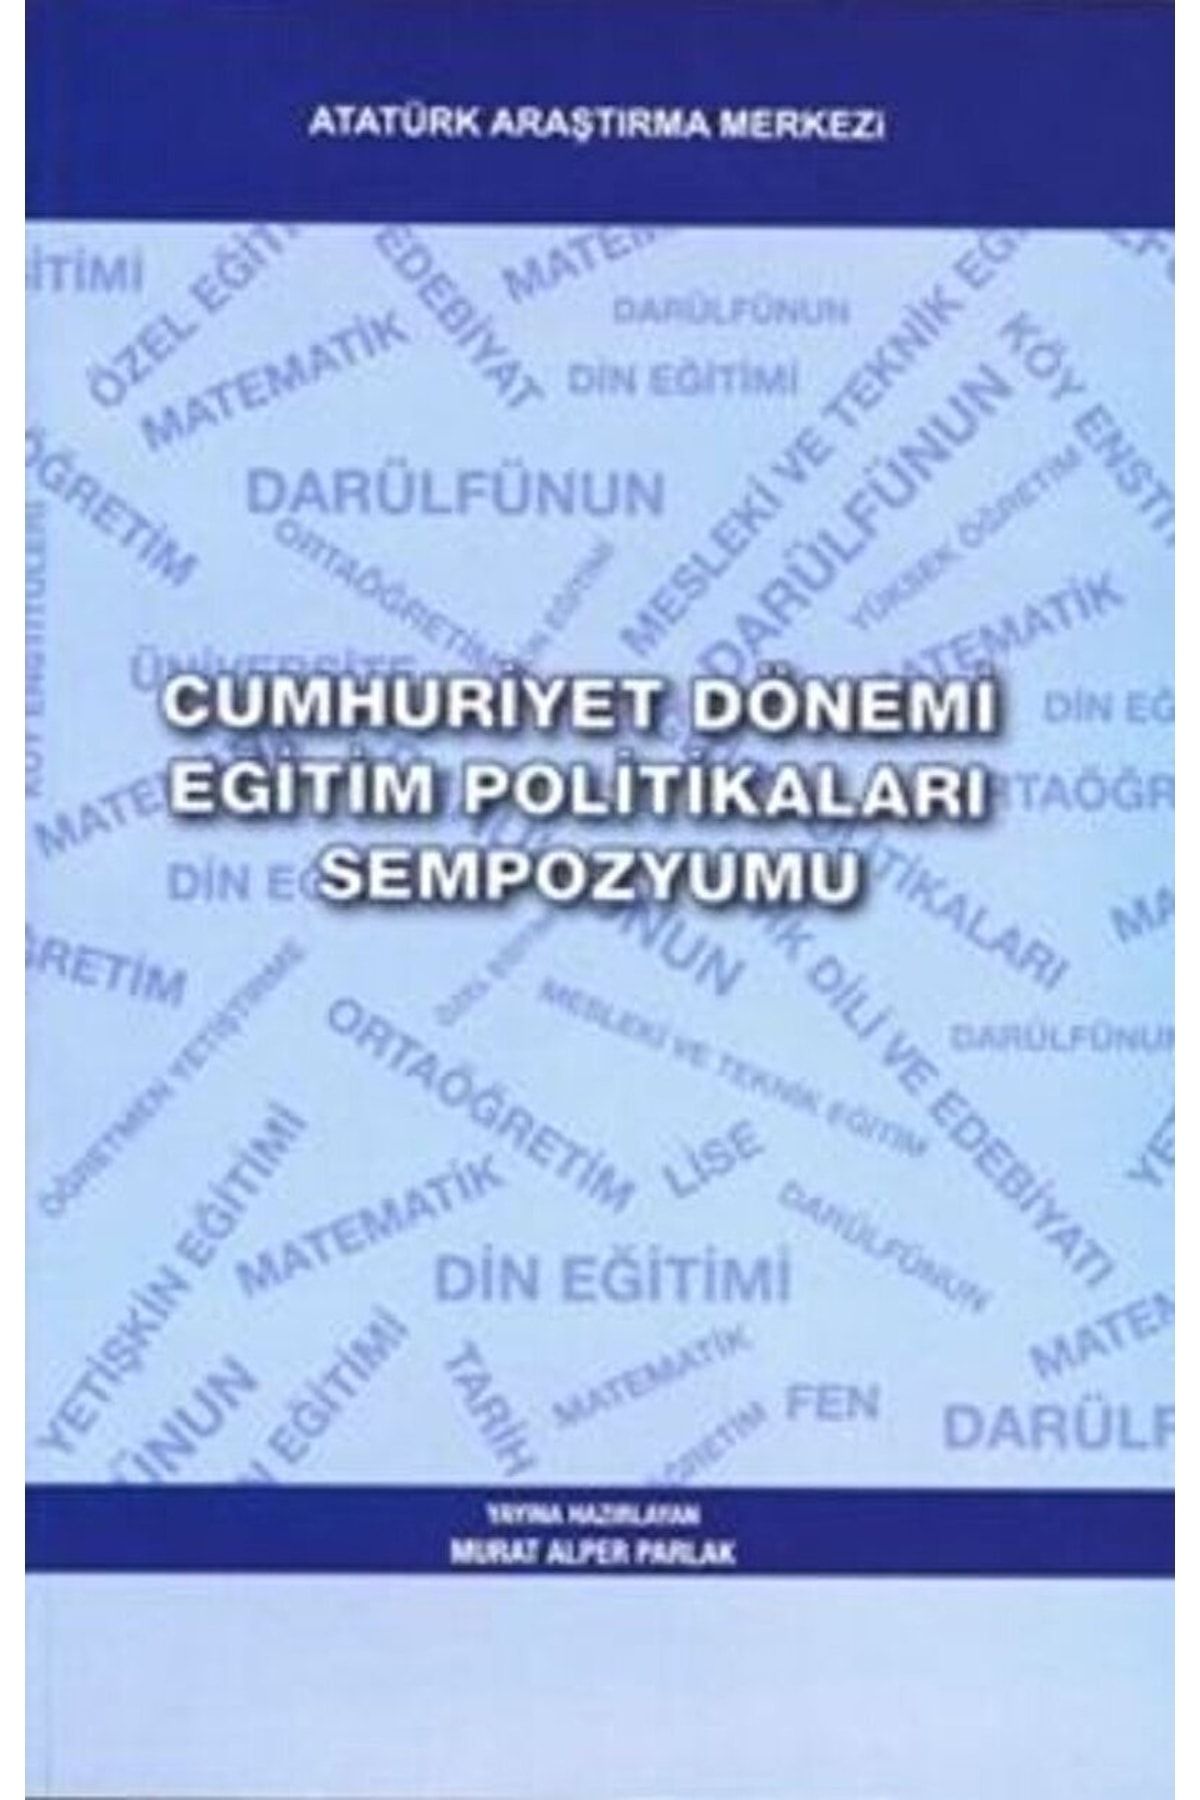 Atatürk Araştırma Merkezi Cumhuriyet Dönemi Eğitim Politikaları Sempozyumu / / 9789751622501